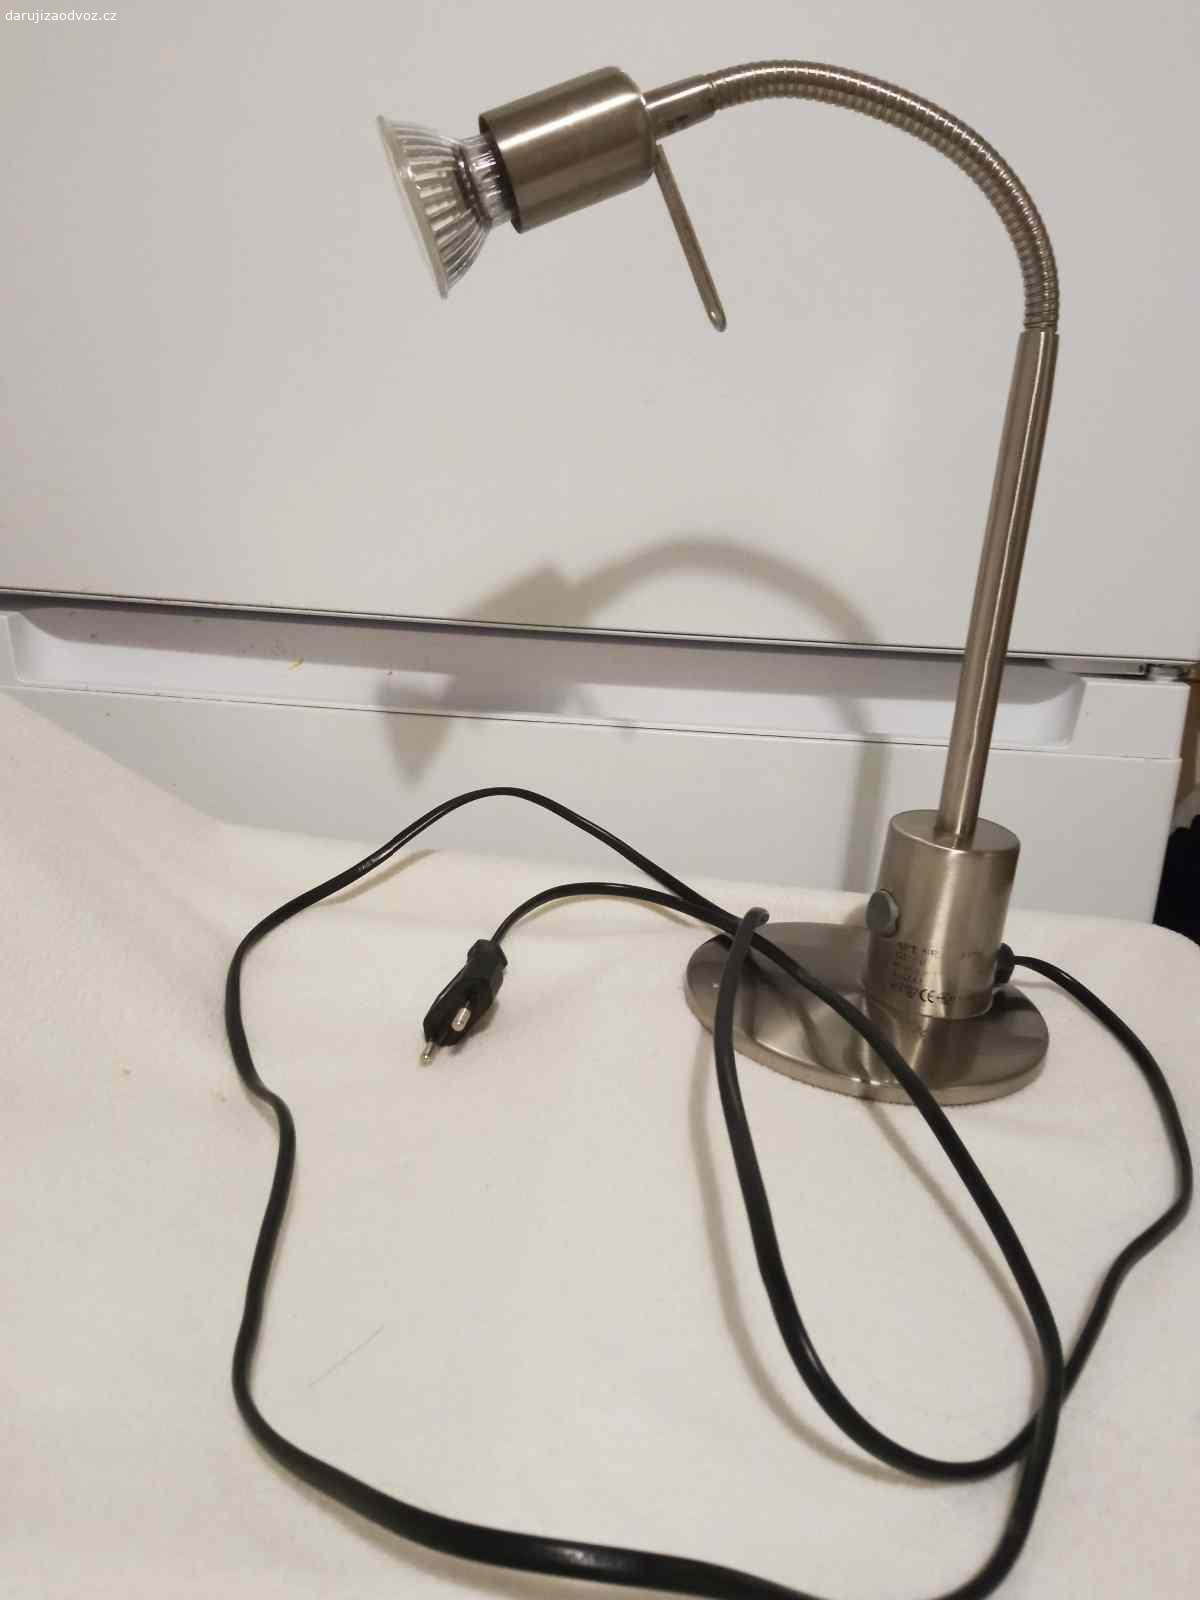 Funkční lampička EGLO. Lampa funkční  ohýbací, / viz . co je na fotu/, žárovku vyměnit, nechávám pro ilustraci.
Možno zaslat za 119 korun.